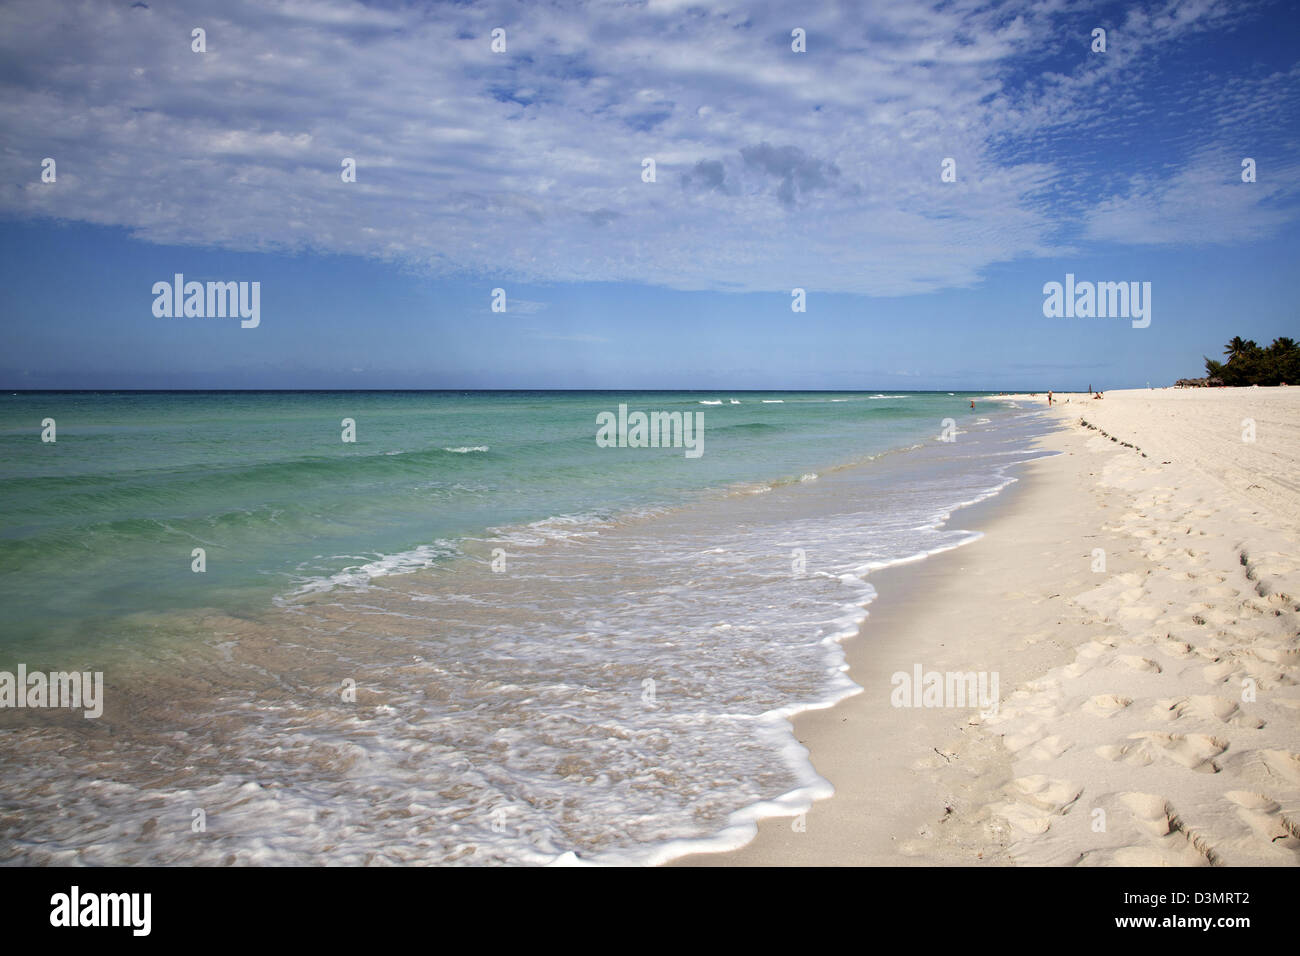 Acqua azzurra dell'Oceano Atlantico e spiaggia tropicale presso la località balneare di Varadero / Playa Azul, Matanzas, Cuba, Caraibi Foto Stock